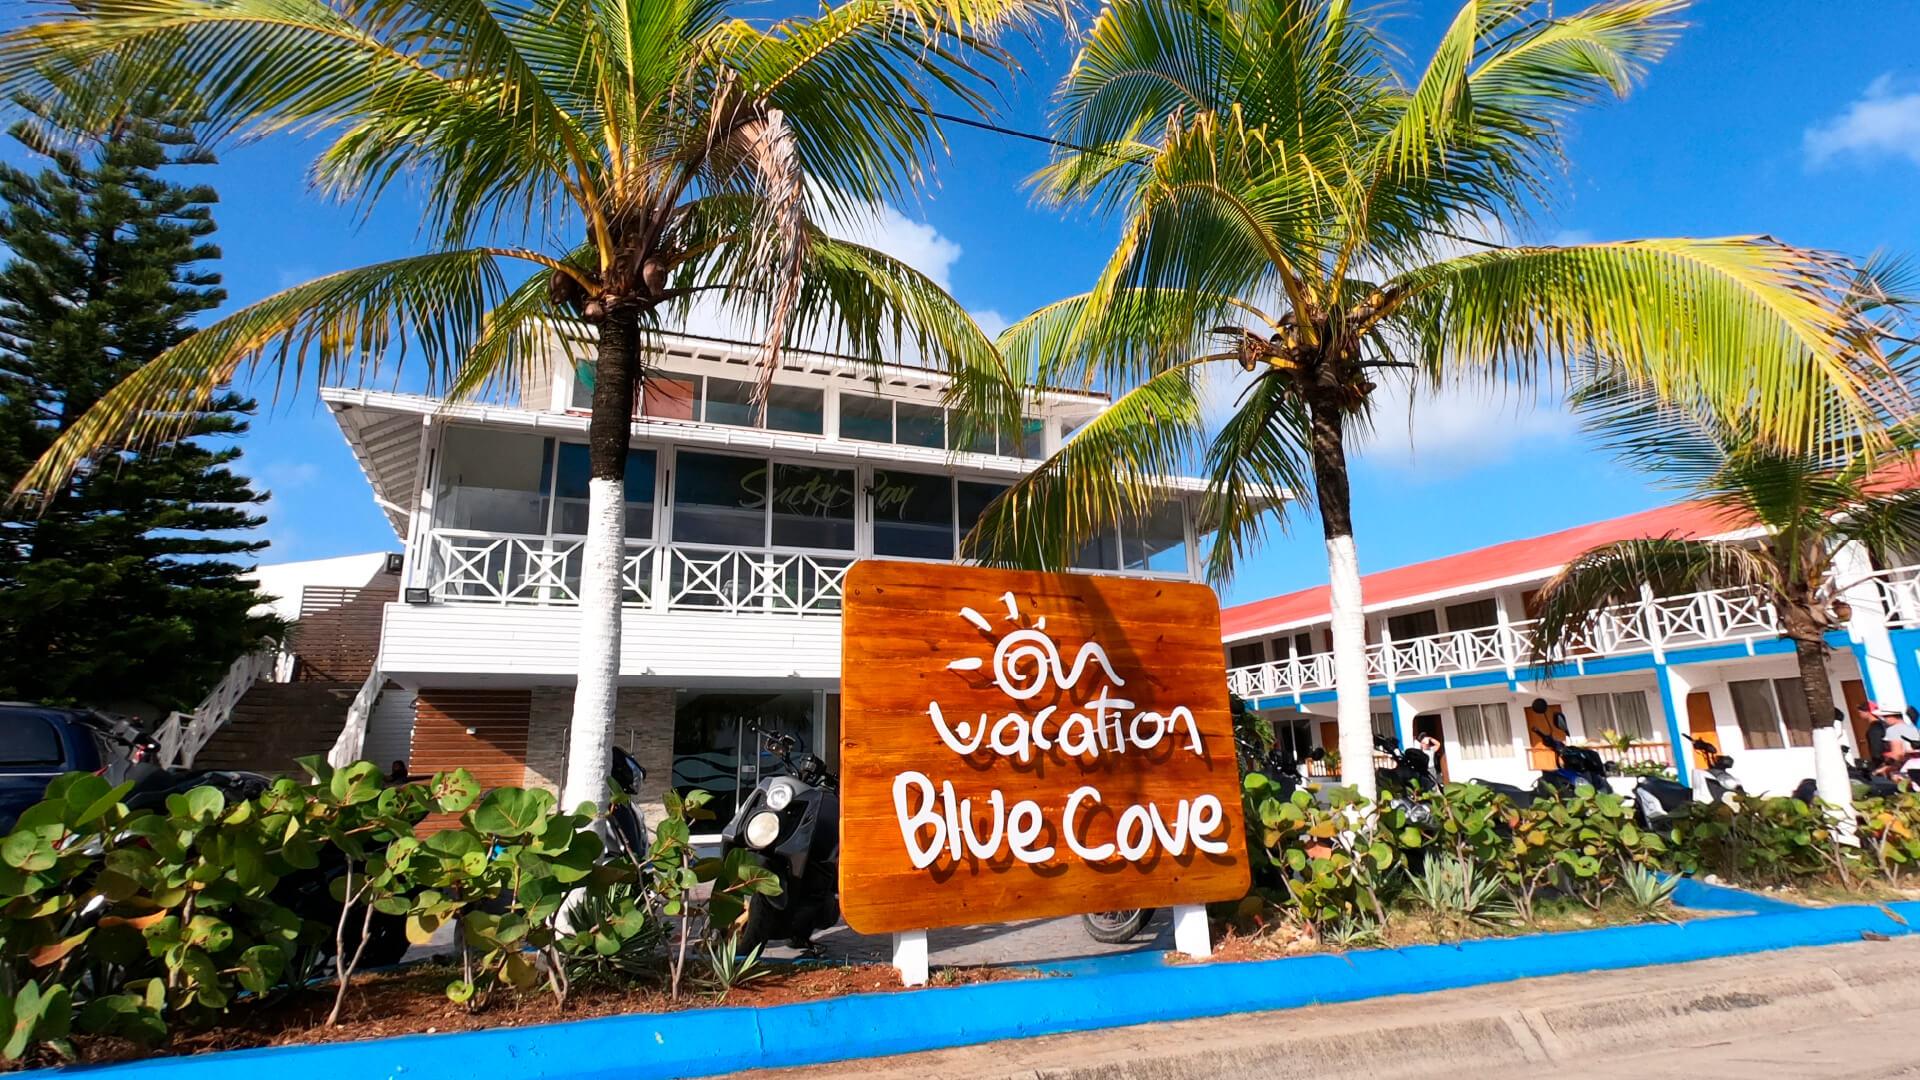 Vista da fachada On Vacation Blue Cove